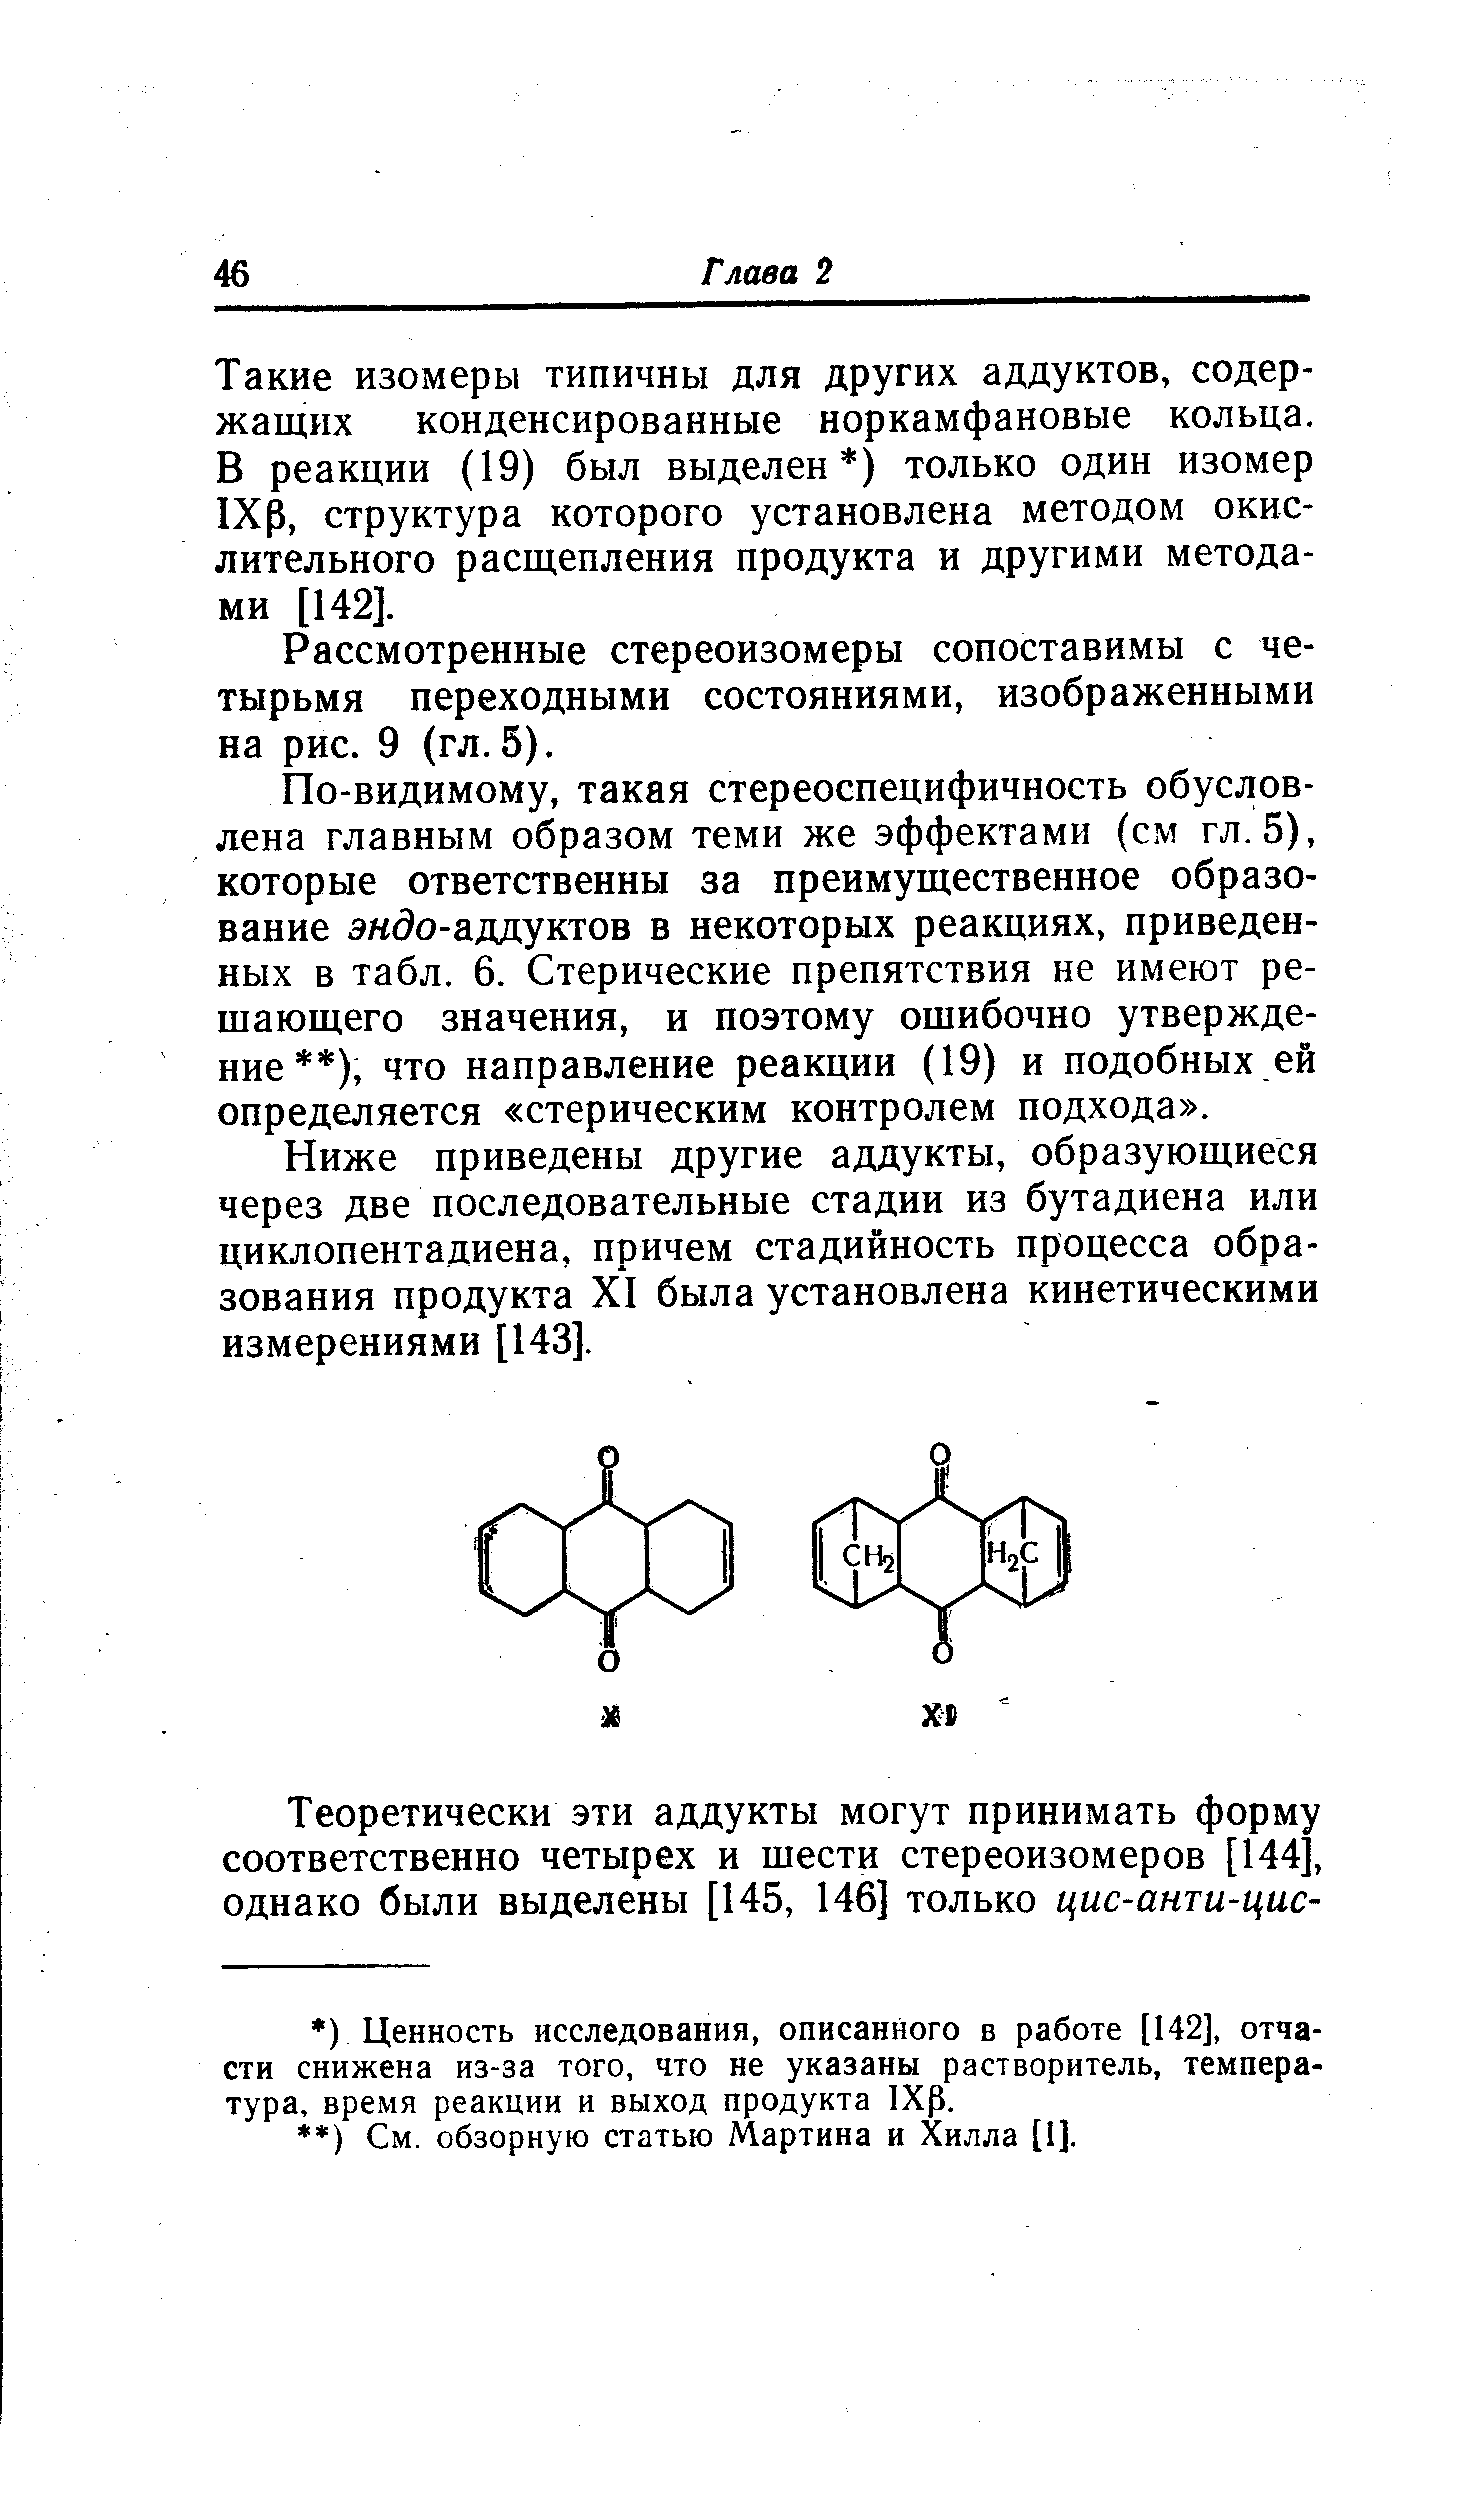 Такие изомеры типичны для других аддуктов, содержащих конденсированные норкамфановые кольца. В реакции (19) был выделен ) только один изомер 1Хр, структура которого установлена методом окислительного расщепления продукта и другими методами [142].